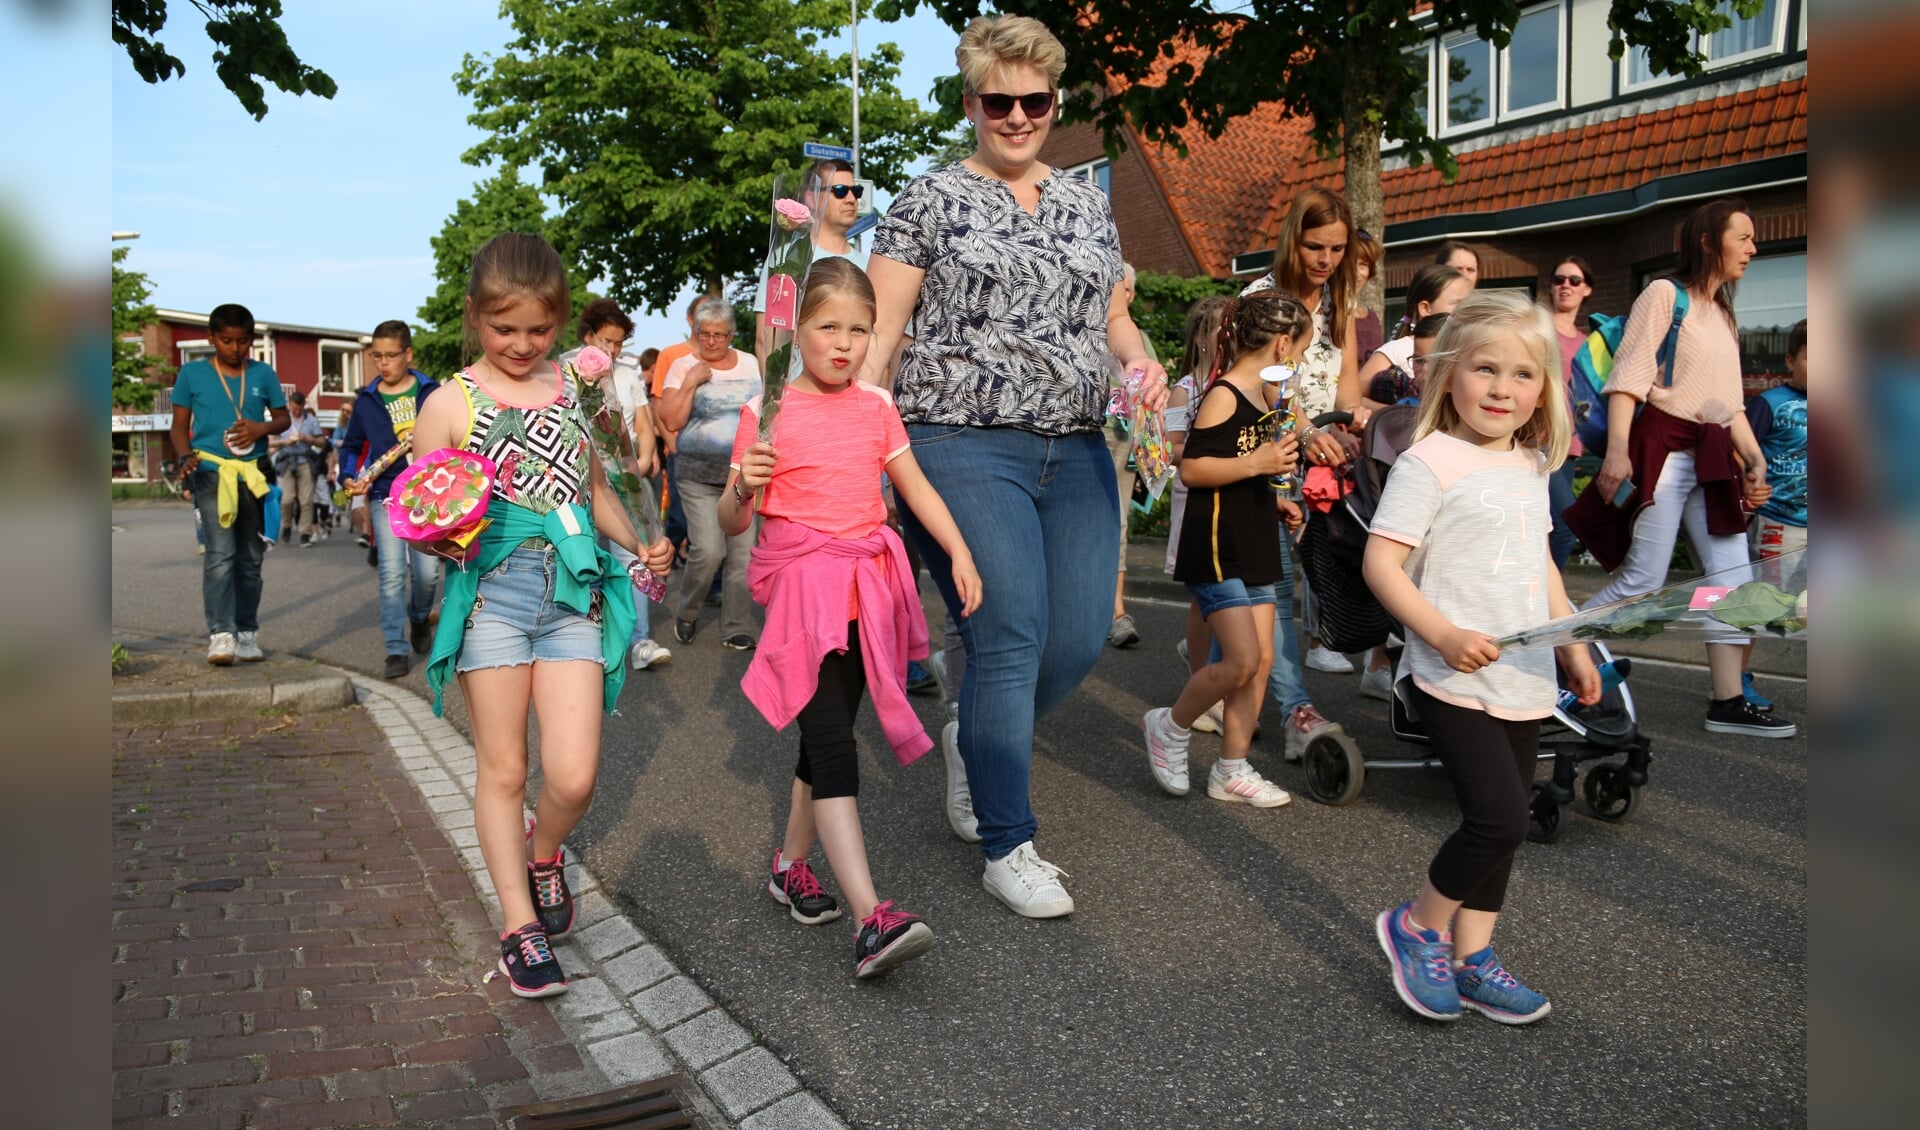 De deelnemers van de Avondvierdaagse in Kruiningen zijn feestelijk onthaald.